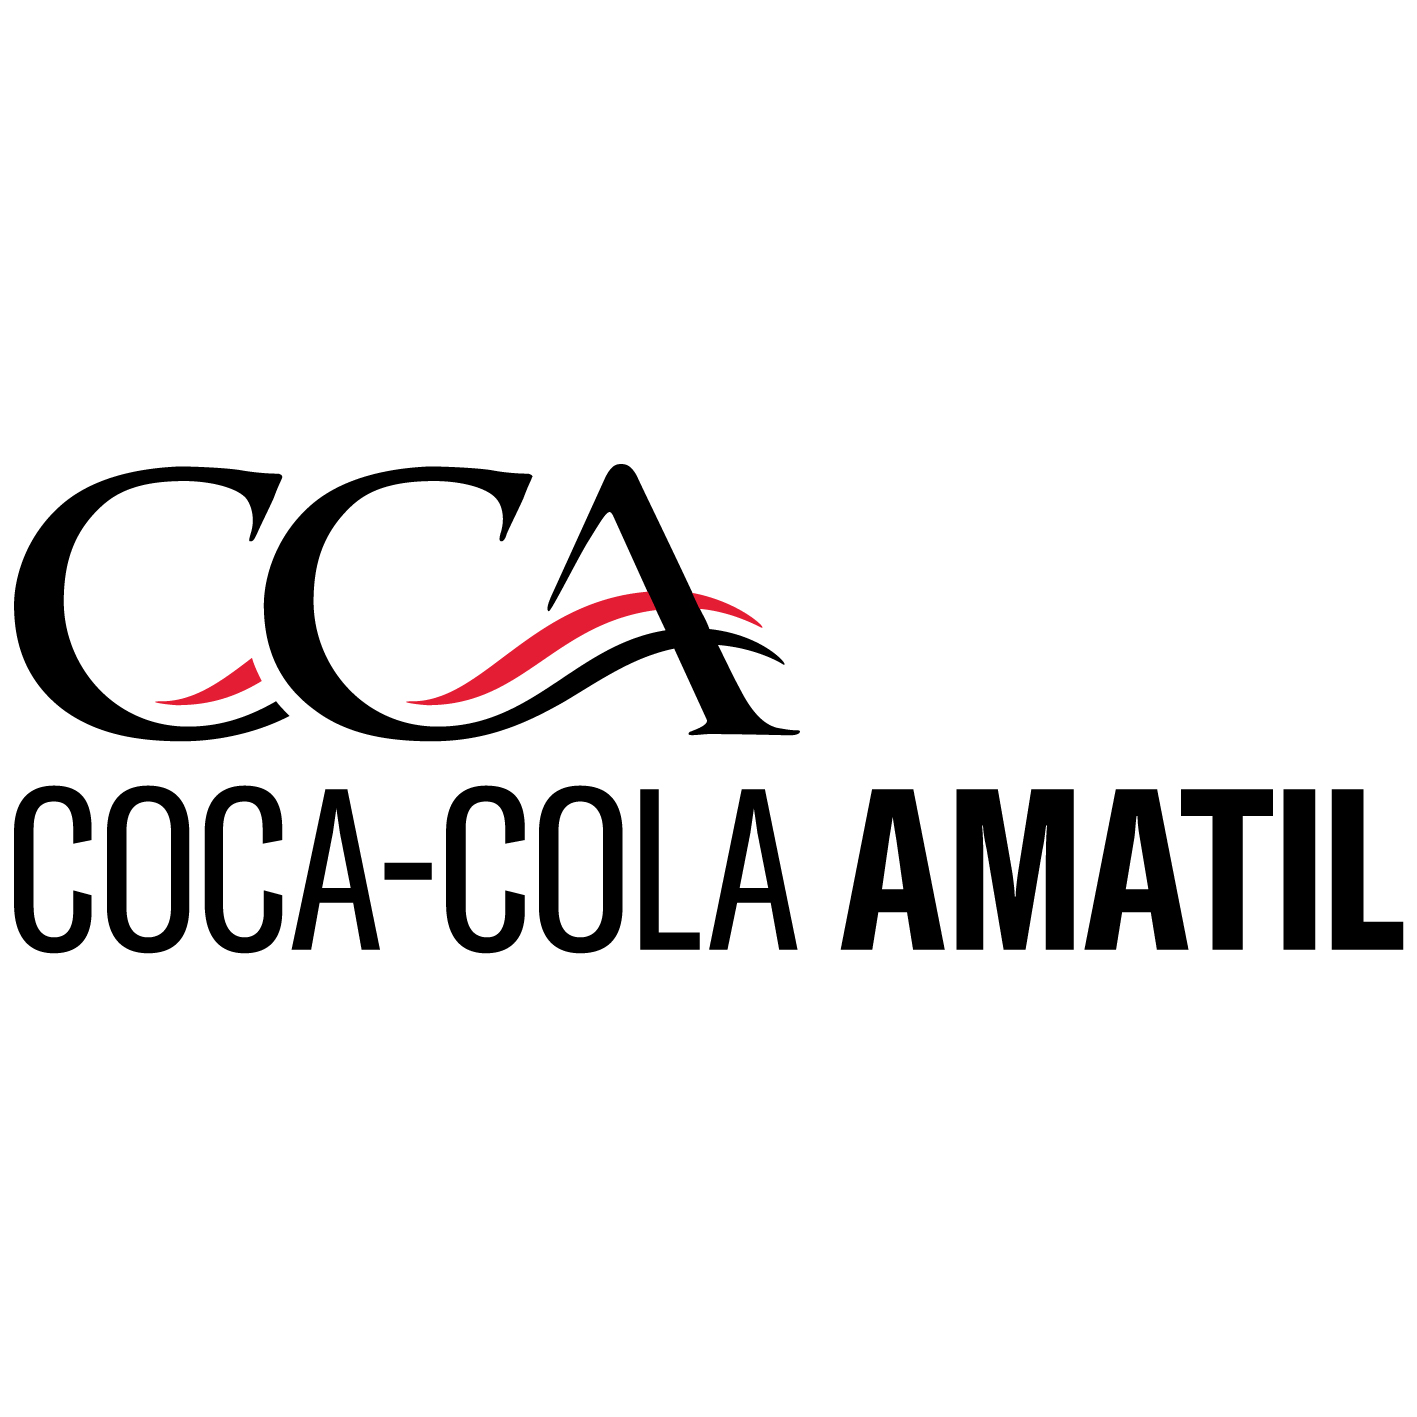 Sydney, New South Wales, Australia : L’ agence Red Search a aidé Coca Cola Amatil à développer son activité grâce au SEO et au marketing numérique